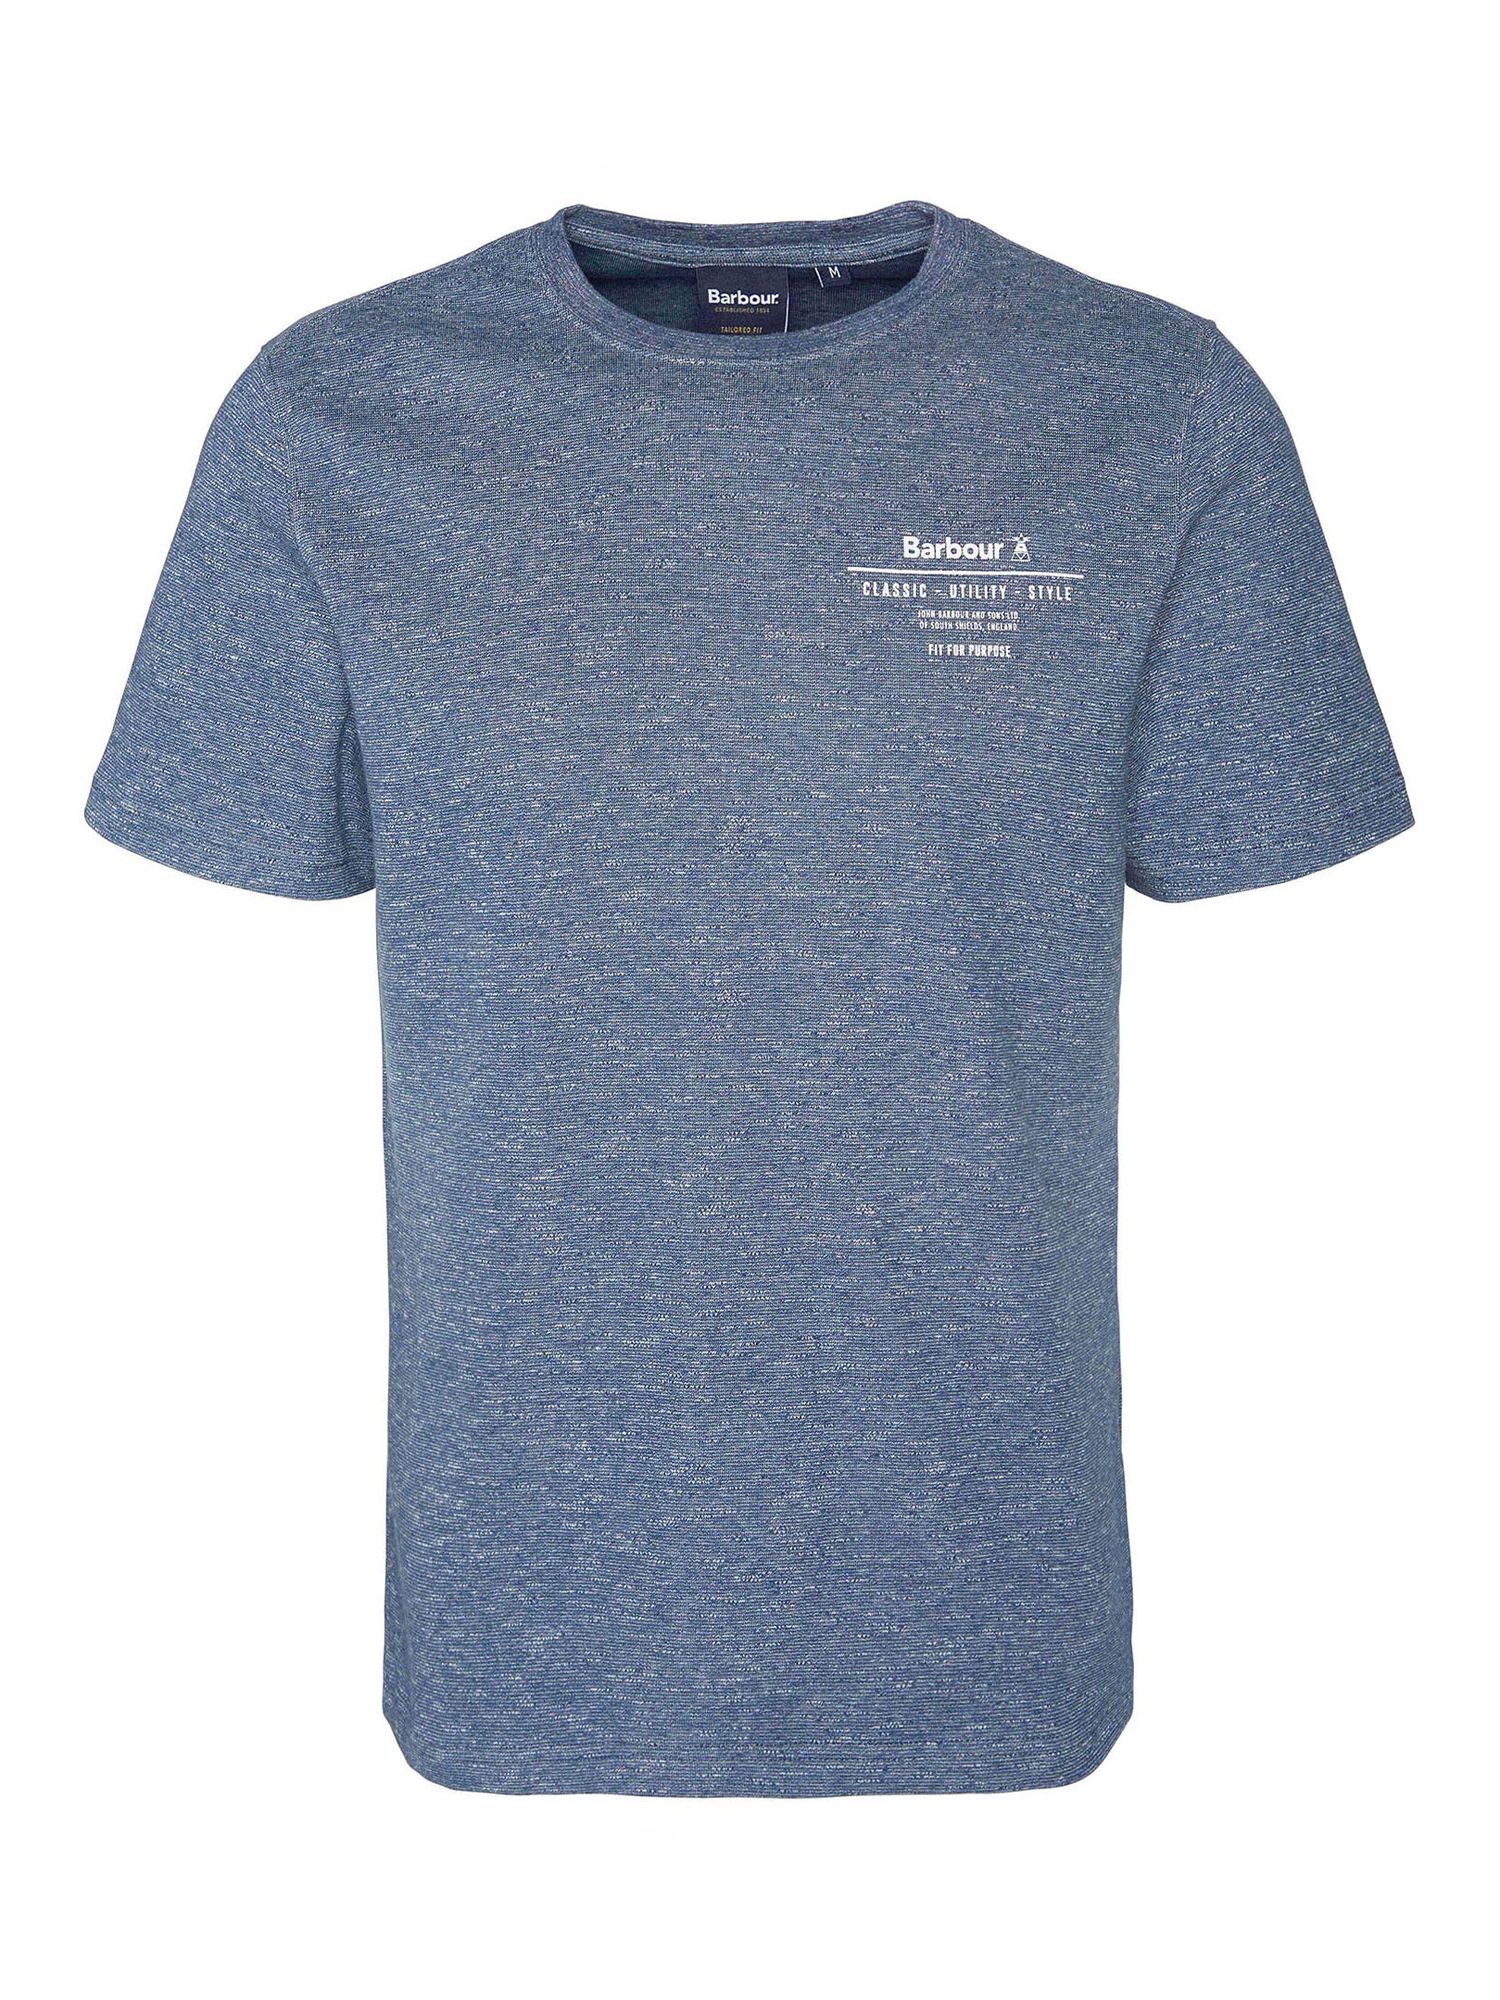 Barbour Huckley T-Shirt, Blue Chalk, S